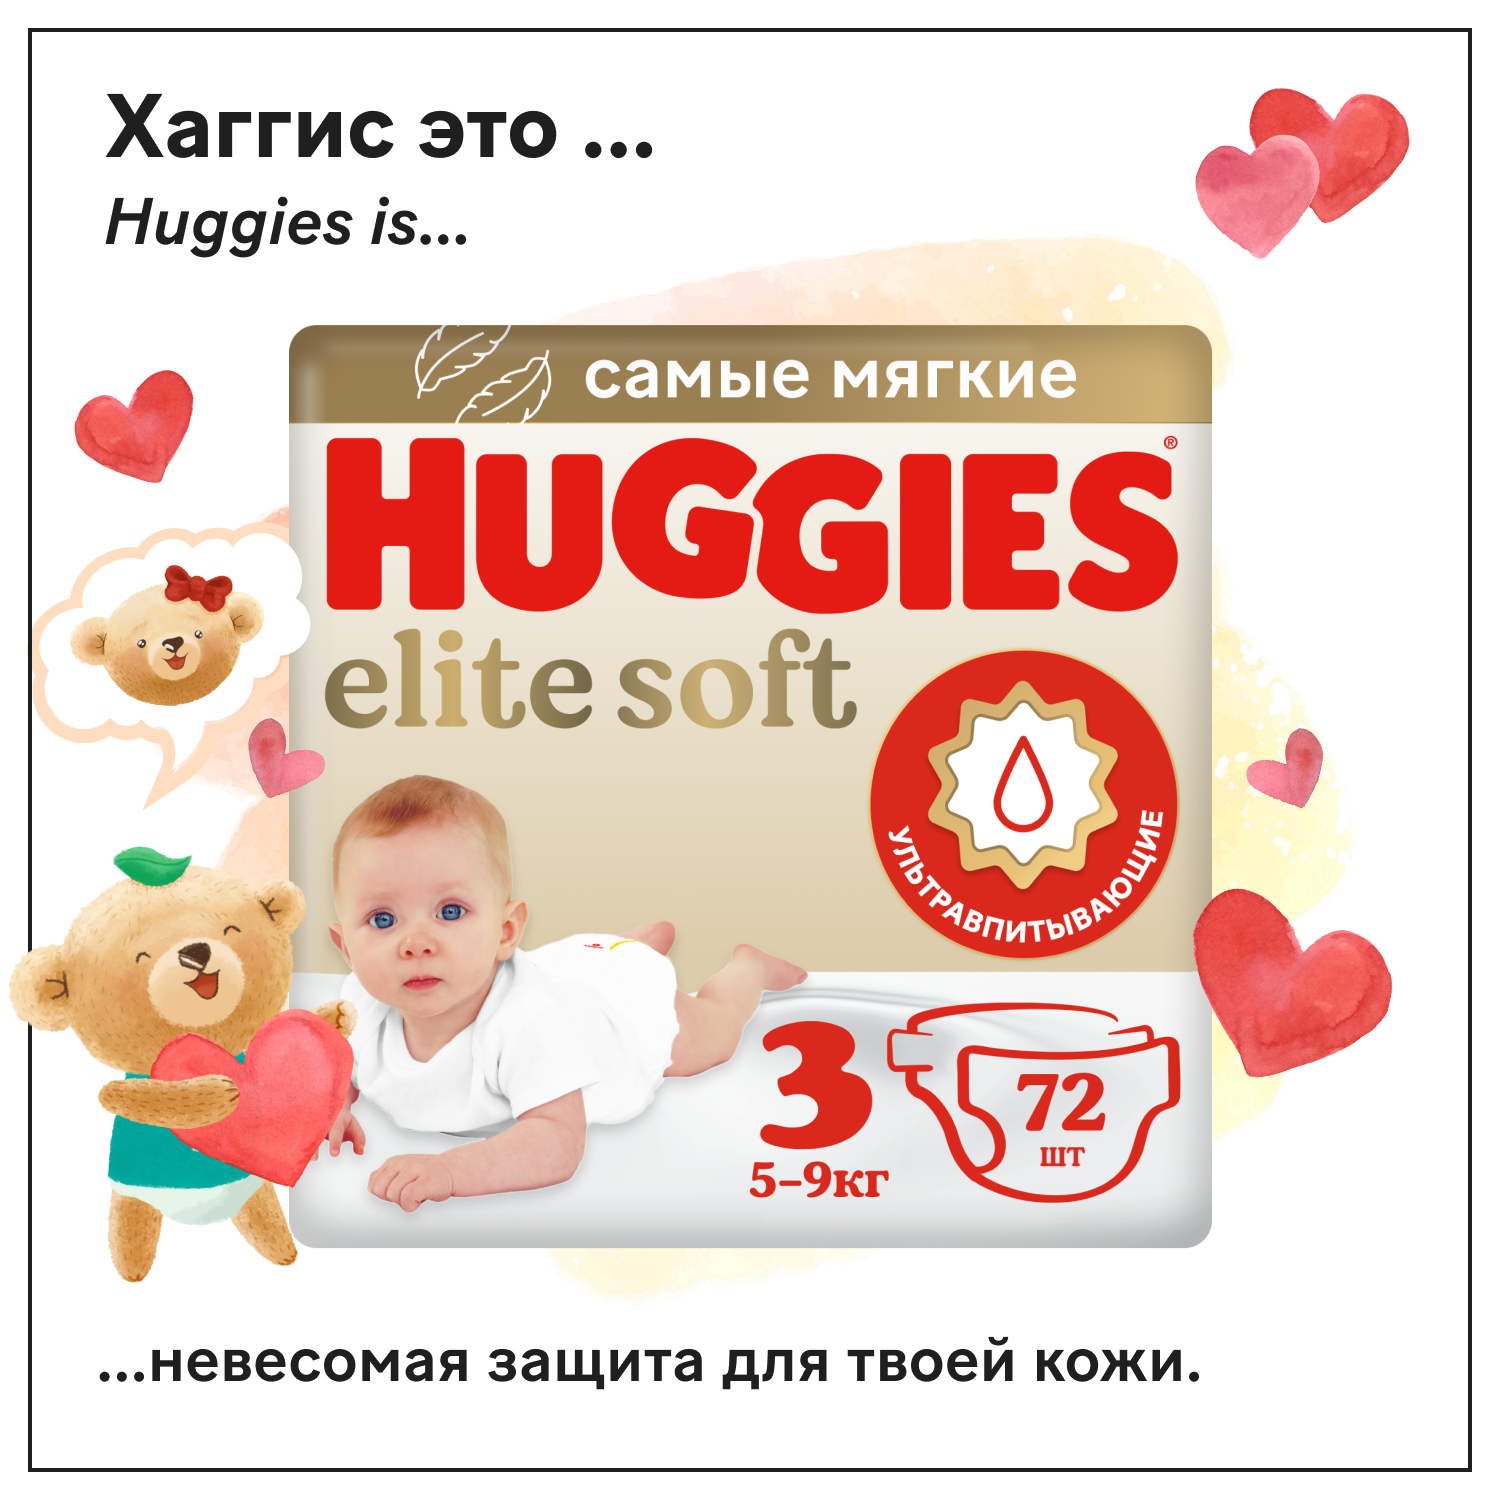 Подгузники Huggies Elite Soft 3 5-9кг 72шт - фото 1